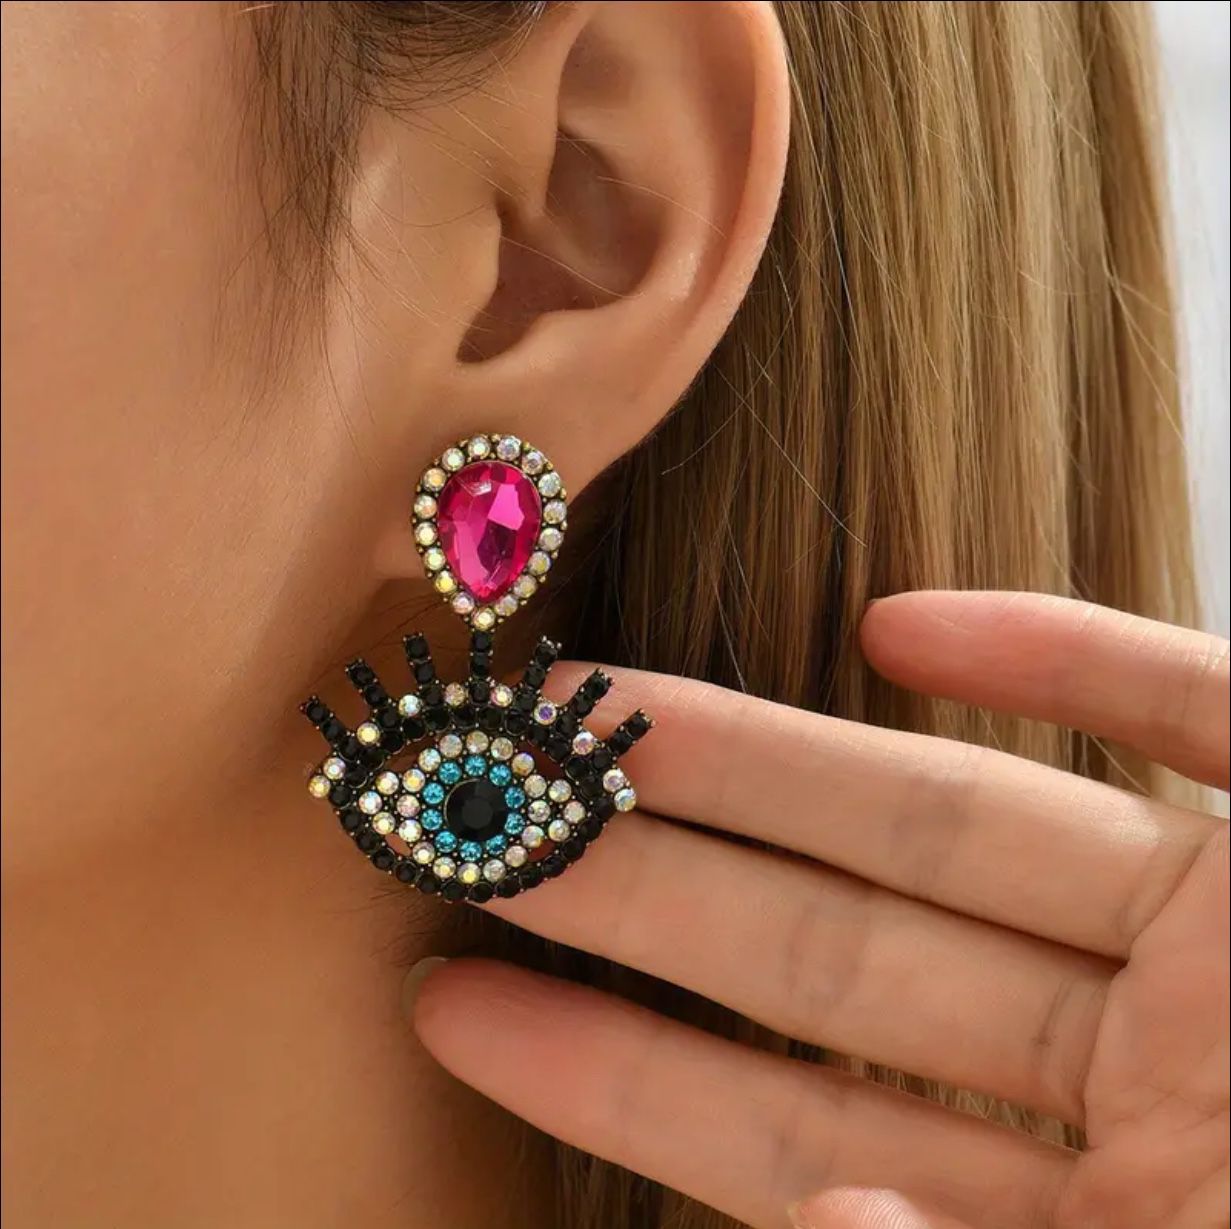 Eye Pattern Rhinestone Earrings in Pink